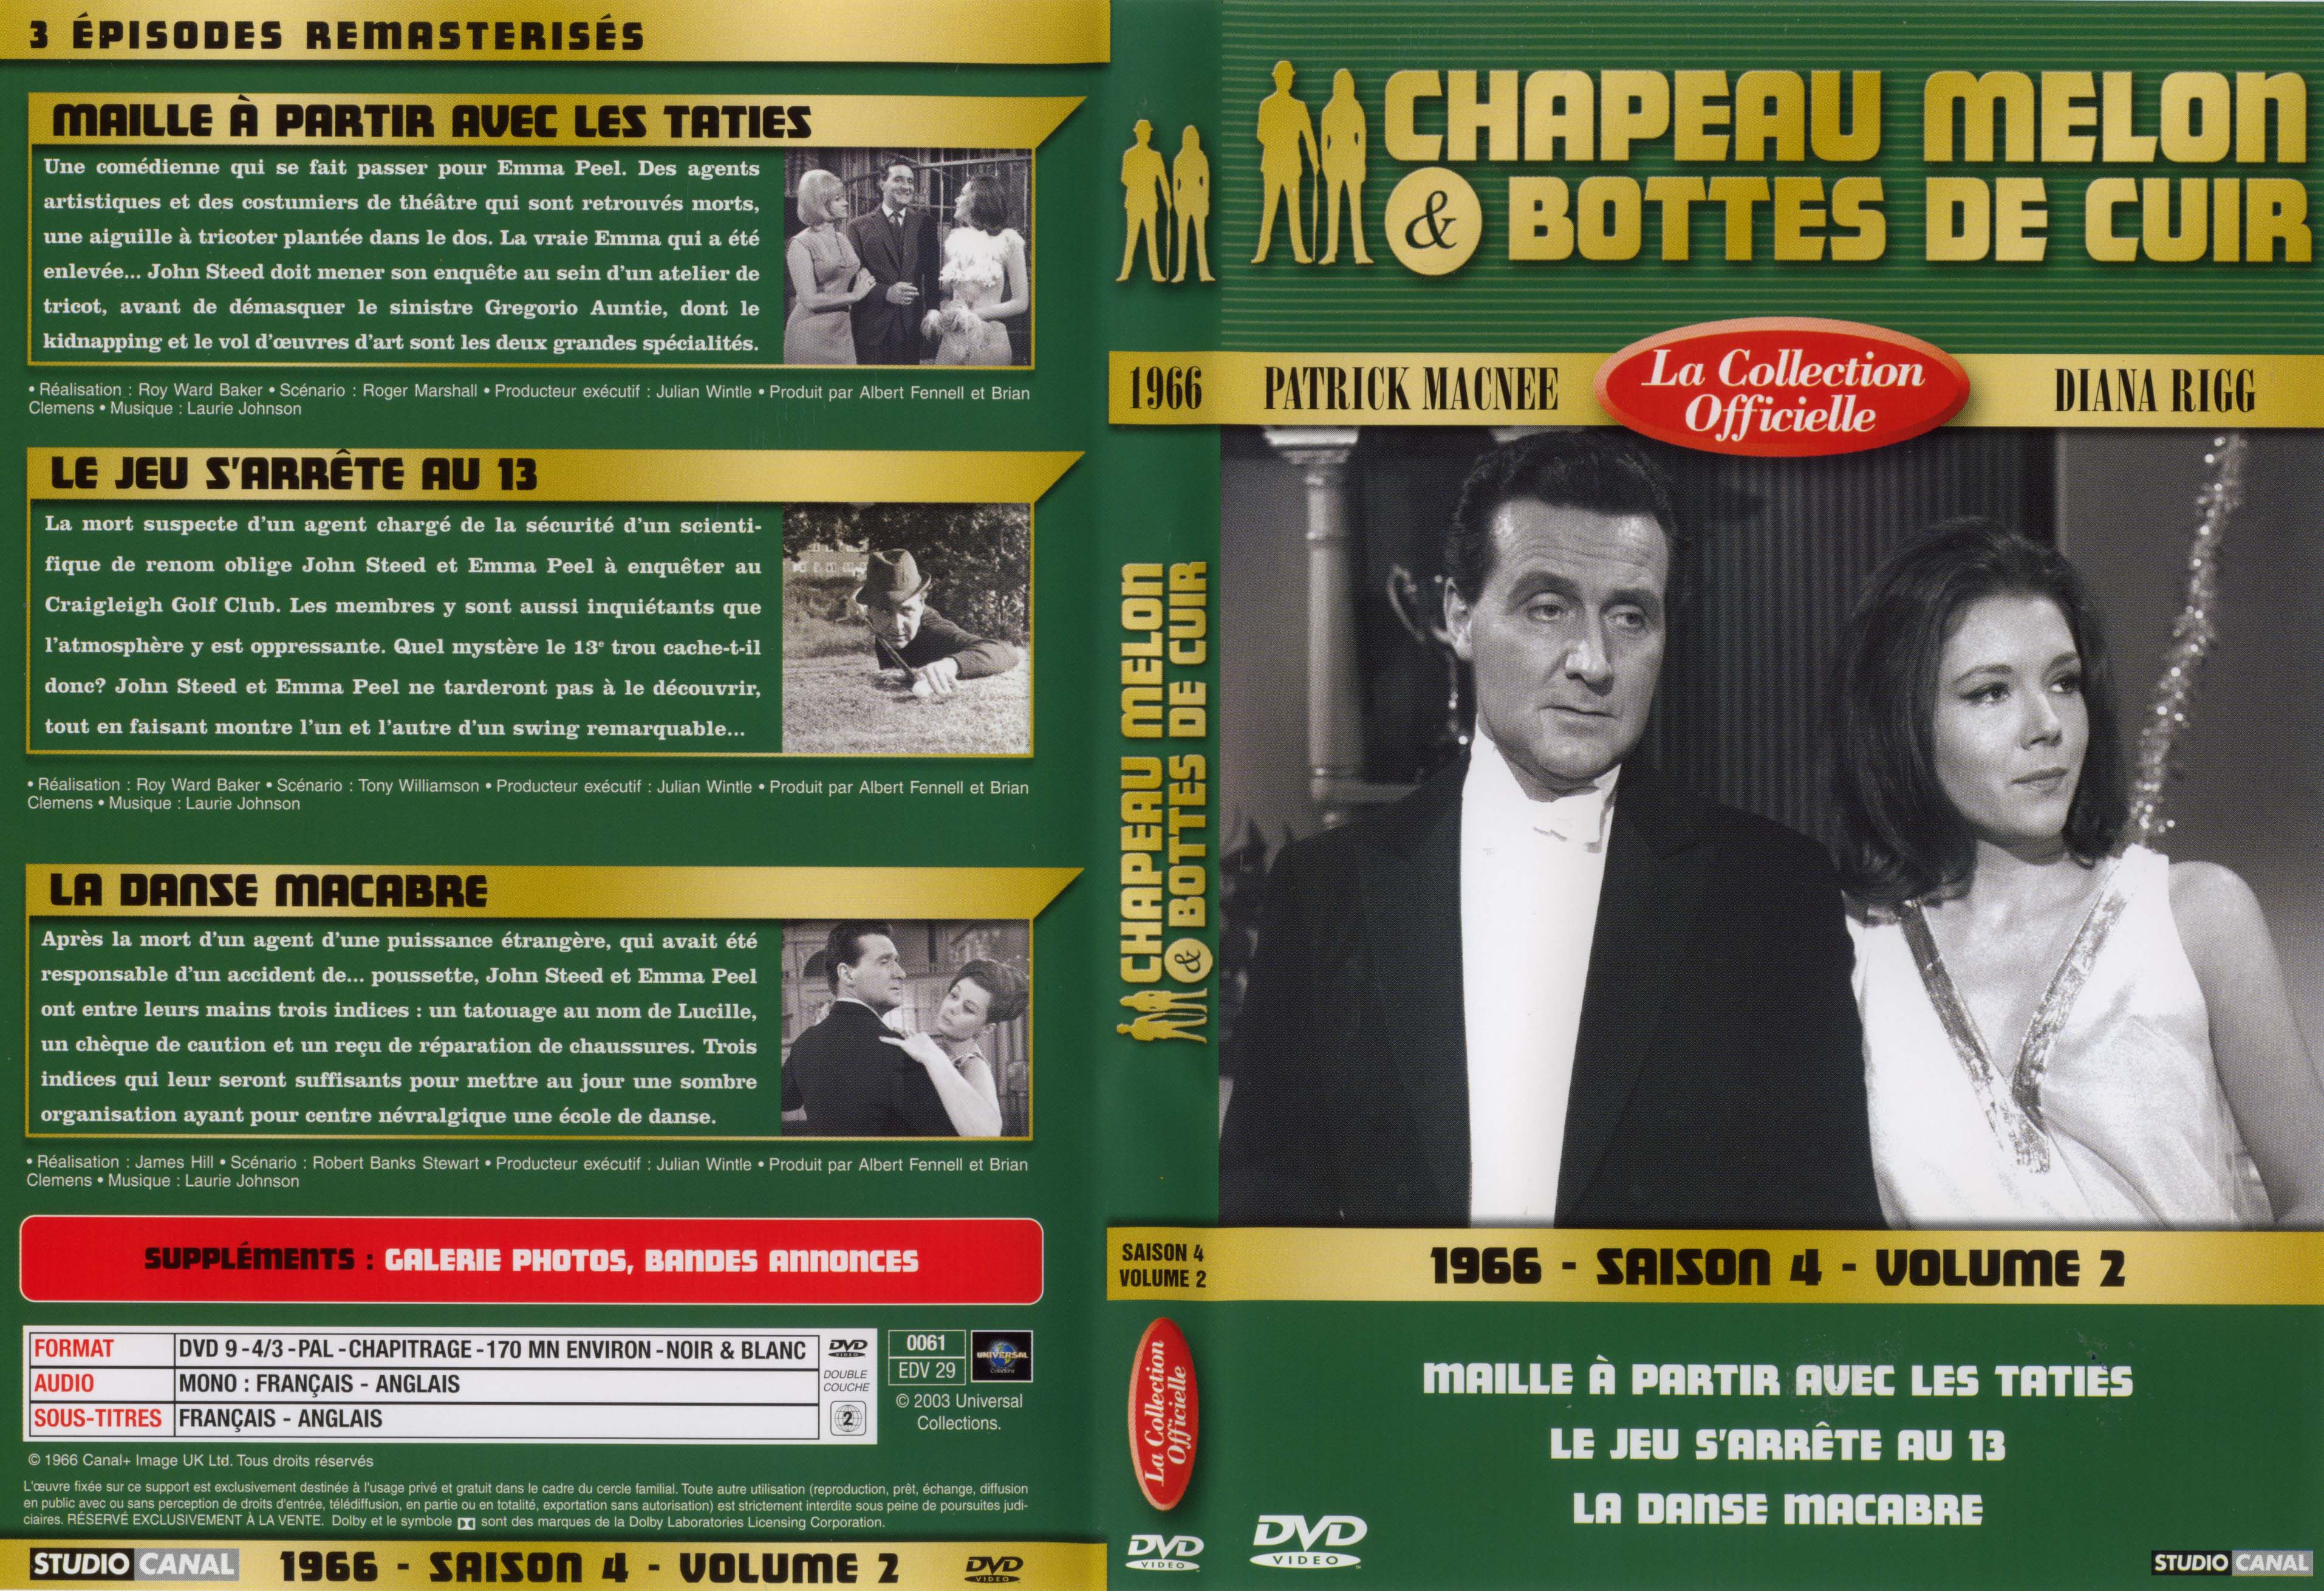 Jaquette DVD Chapeau melon et bottes de cuir 1966 saison 4 vol 2